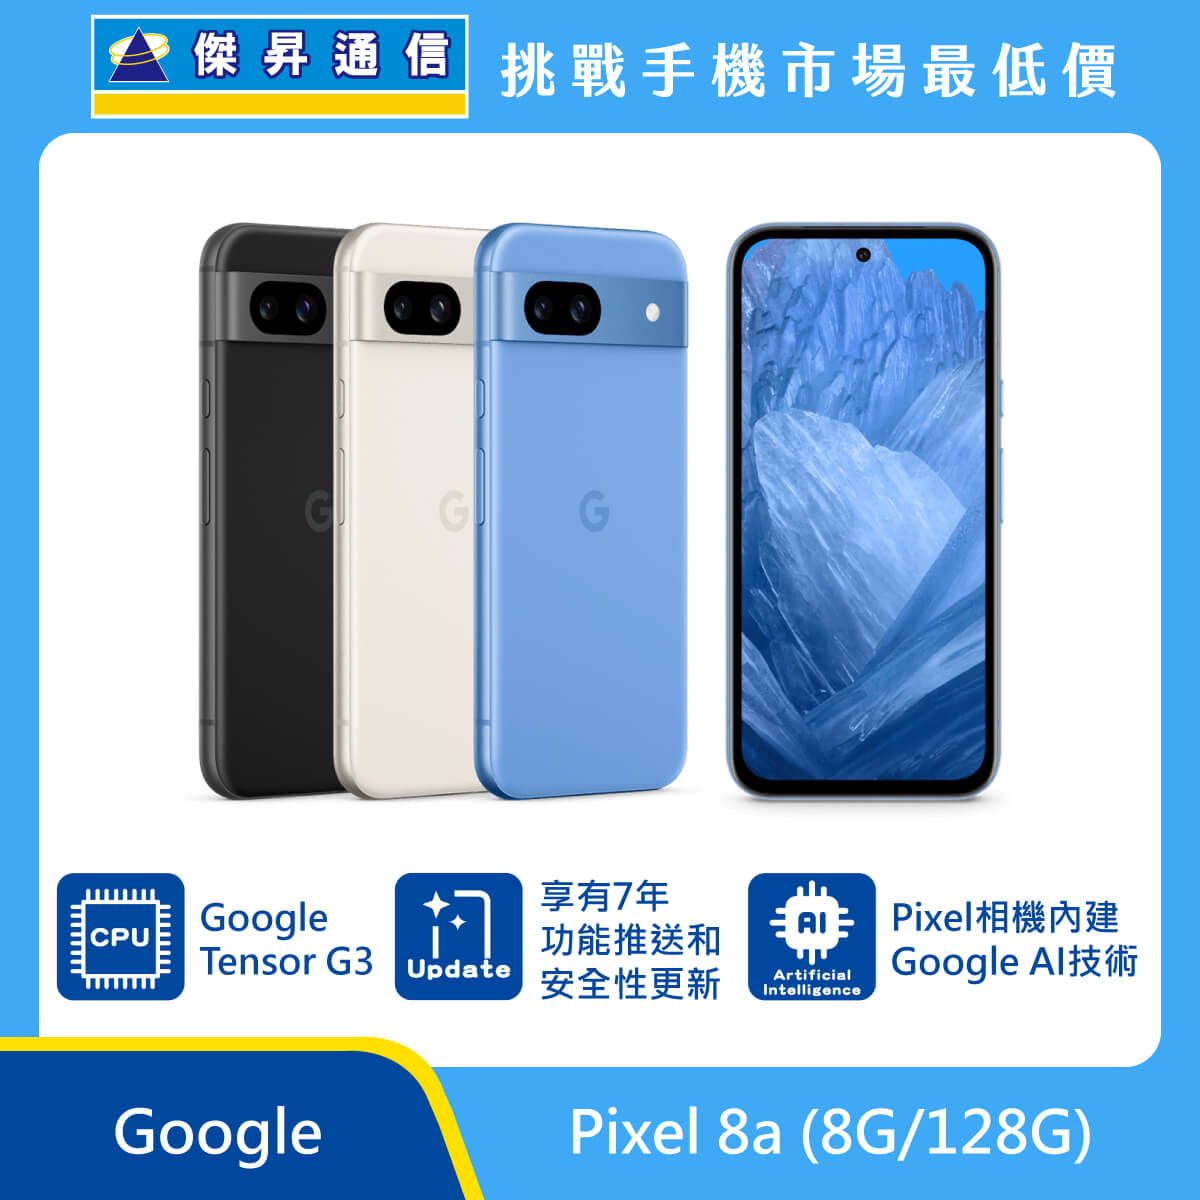 Google Pixel 8a (8G/128G)